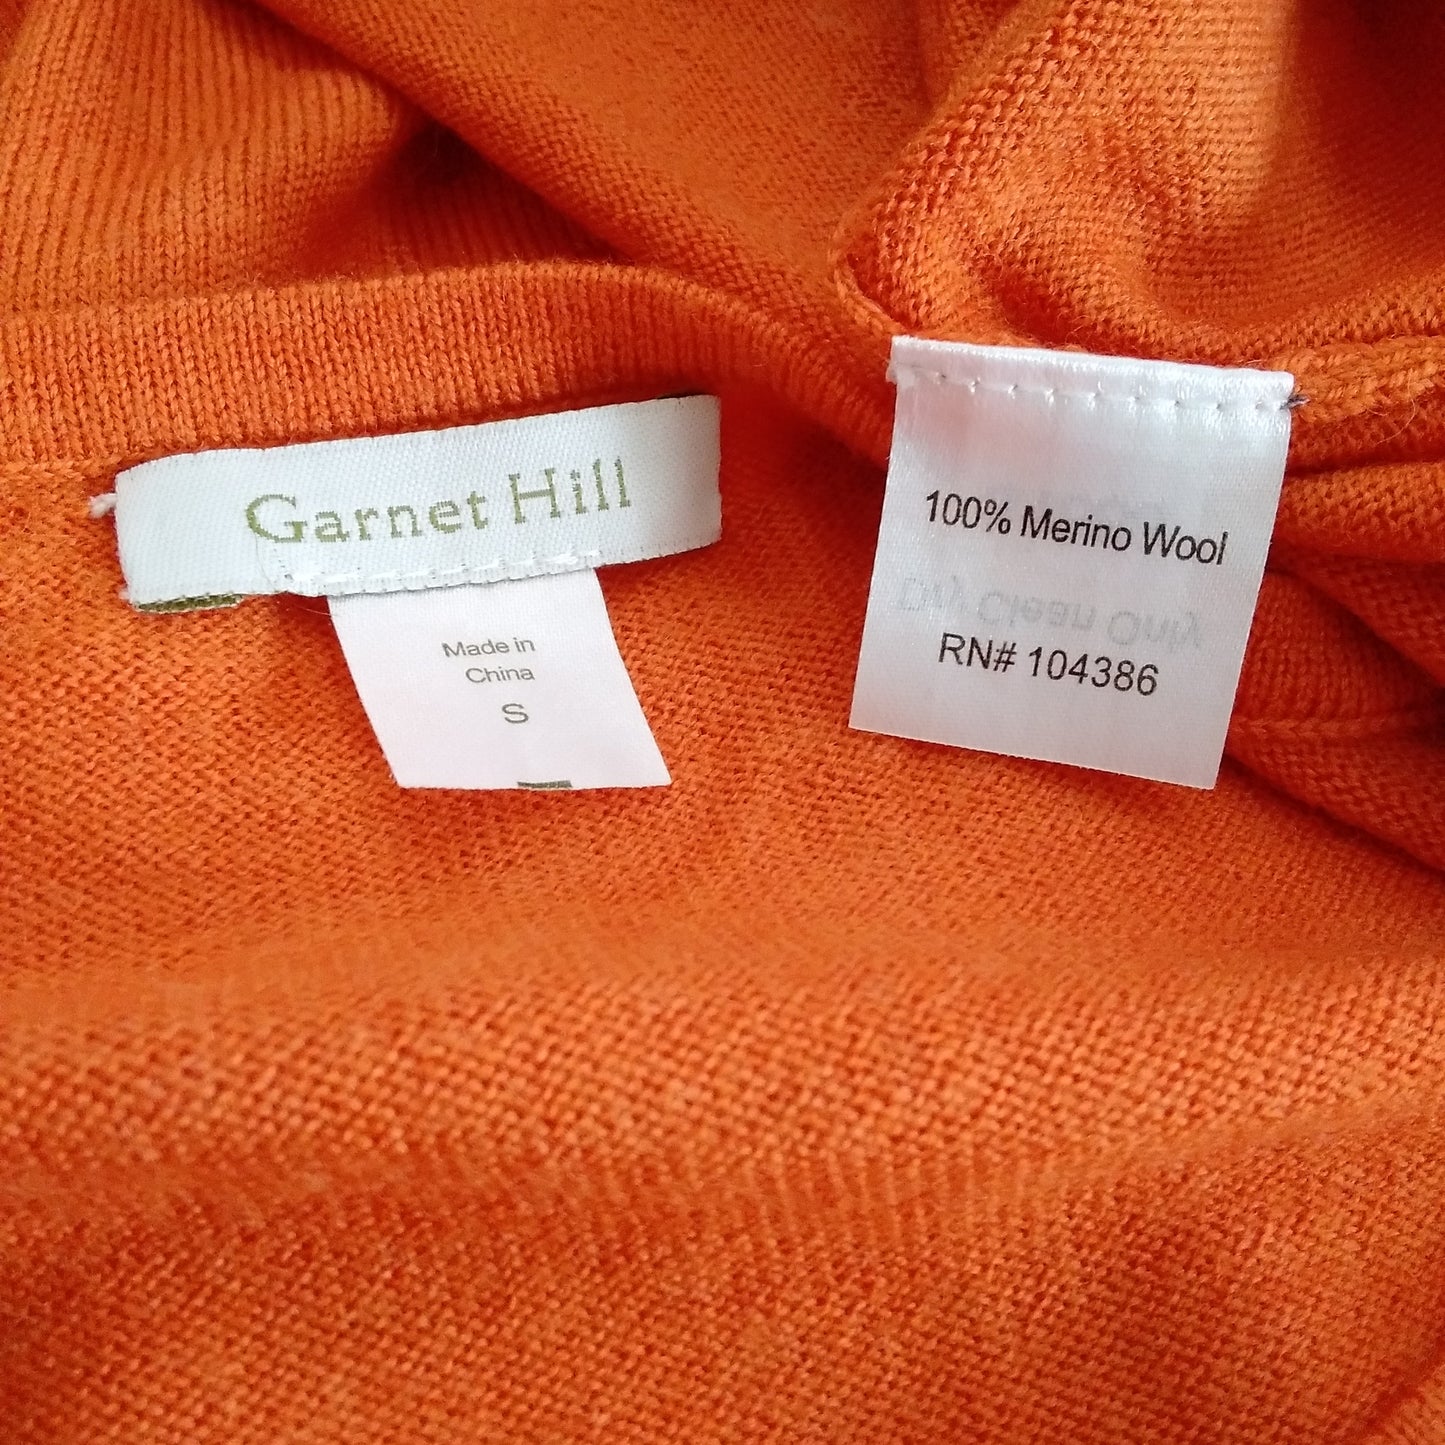 Garnet Hill Orange Long Sleeve Merino Wool Sweater Dress - S